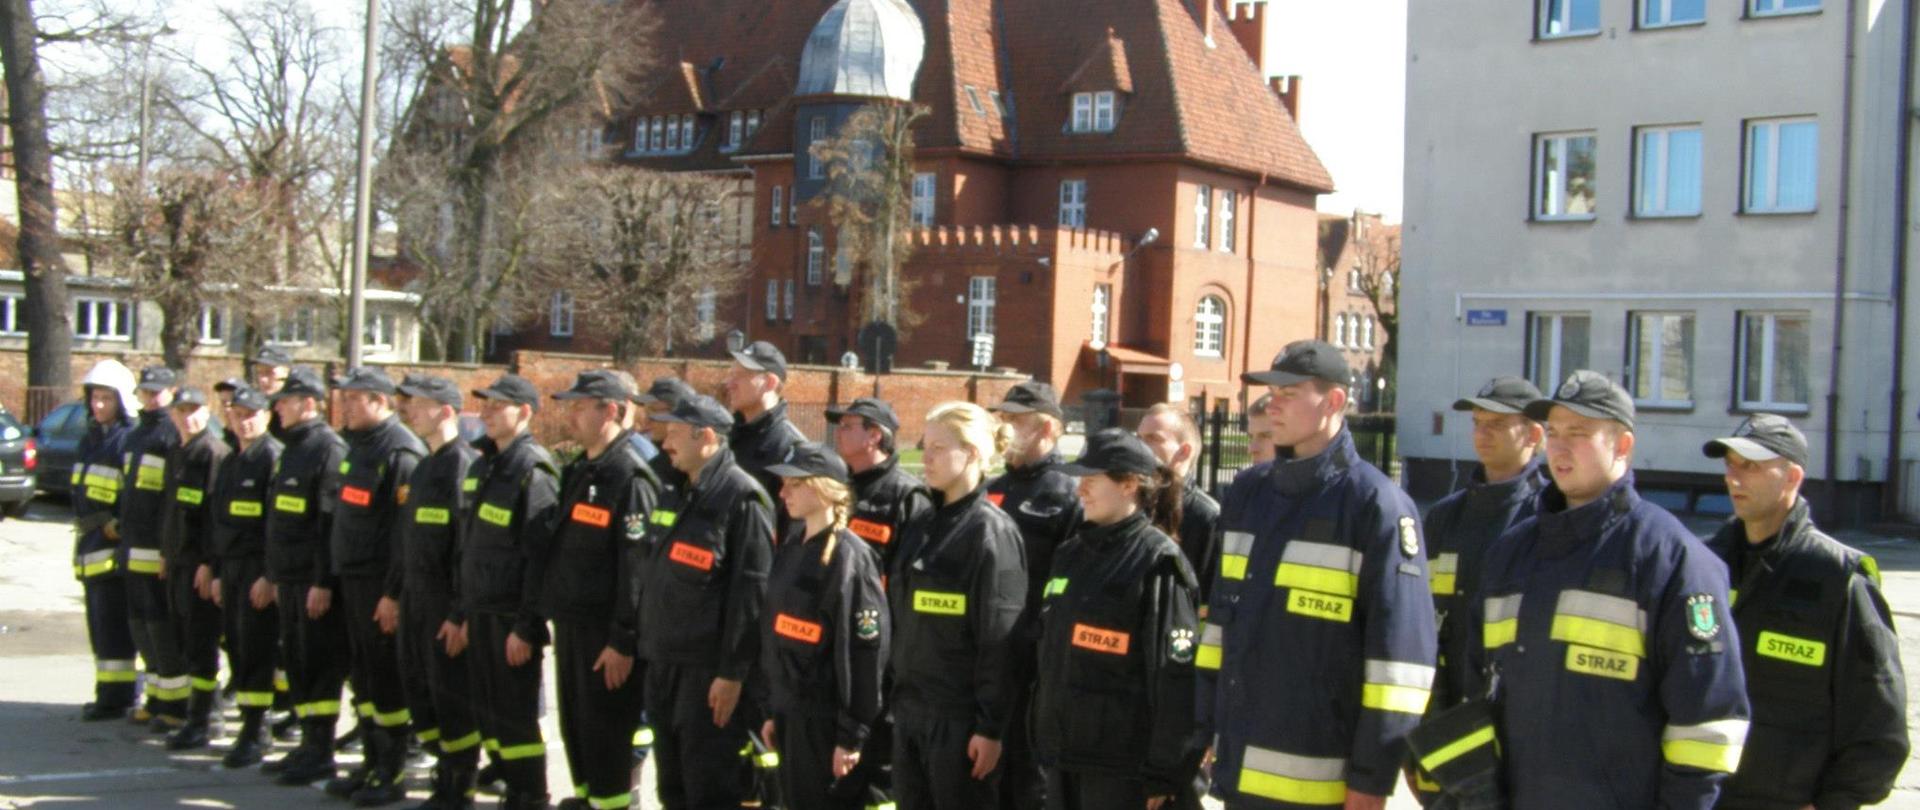 Zbiórka uczestników szkolenia OSP na placu KP PSP Tczew w mundurach koszarowych.